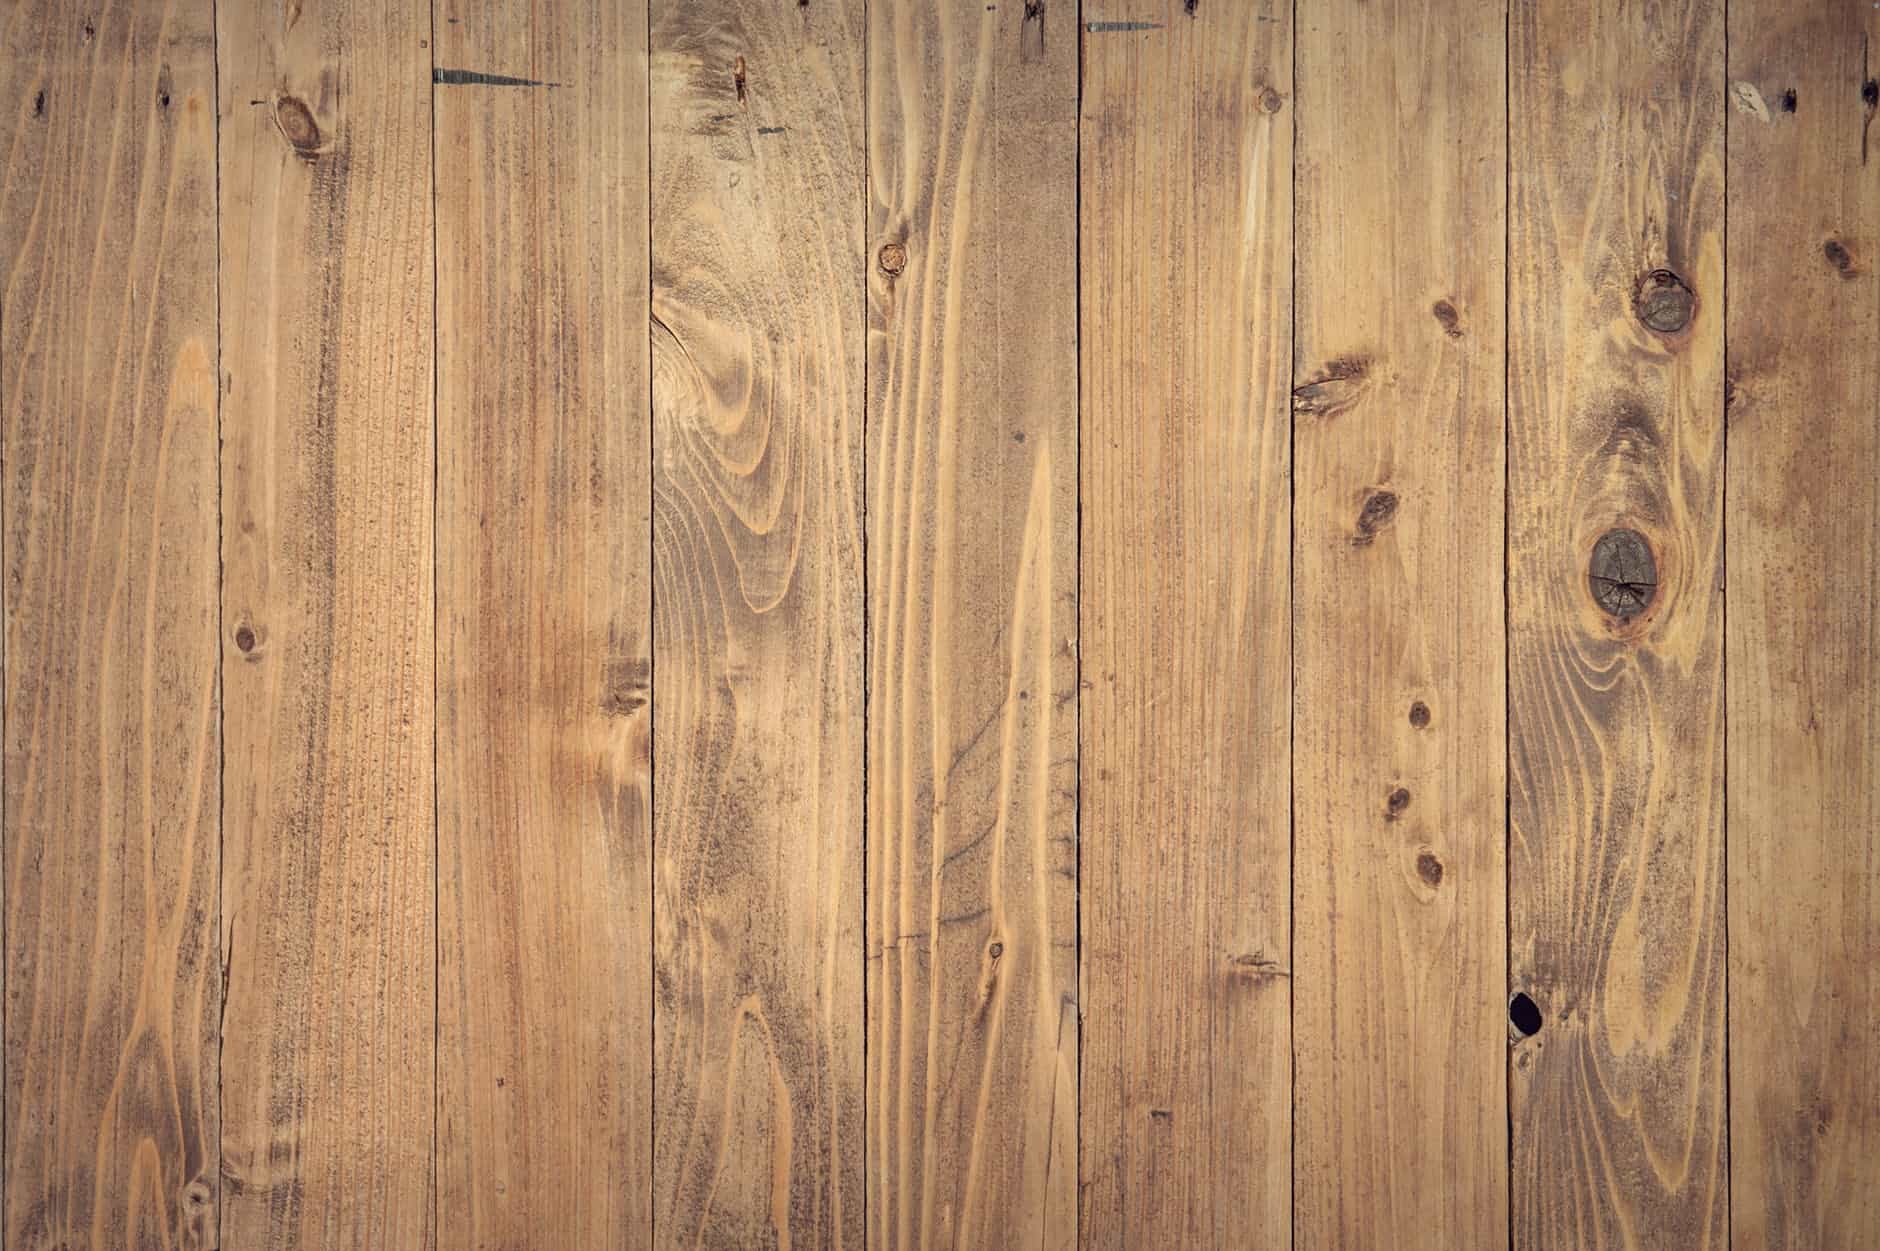 Wooden Floor Feature Image